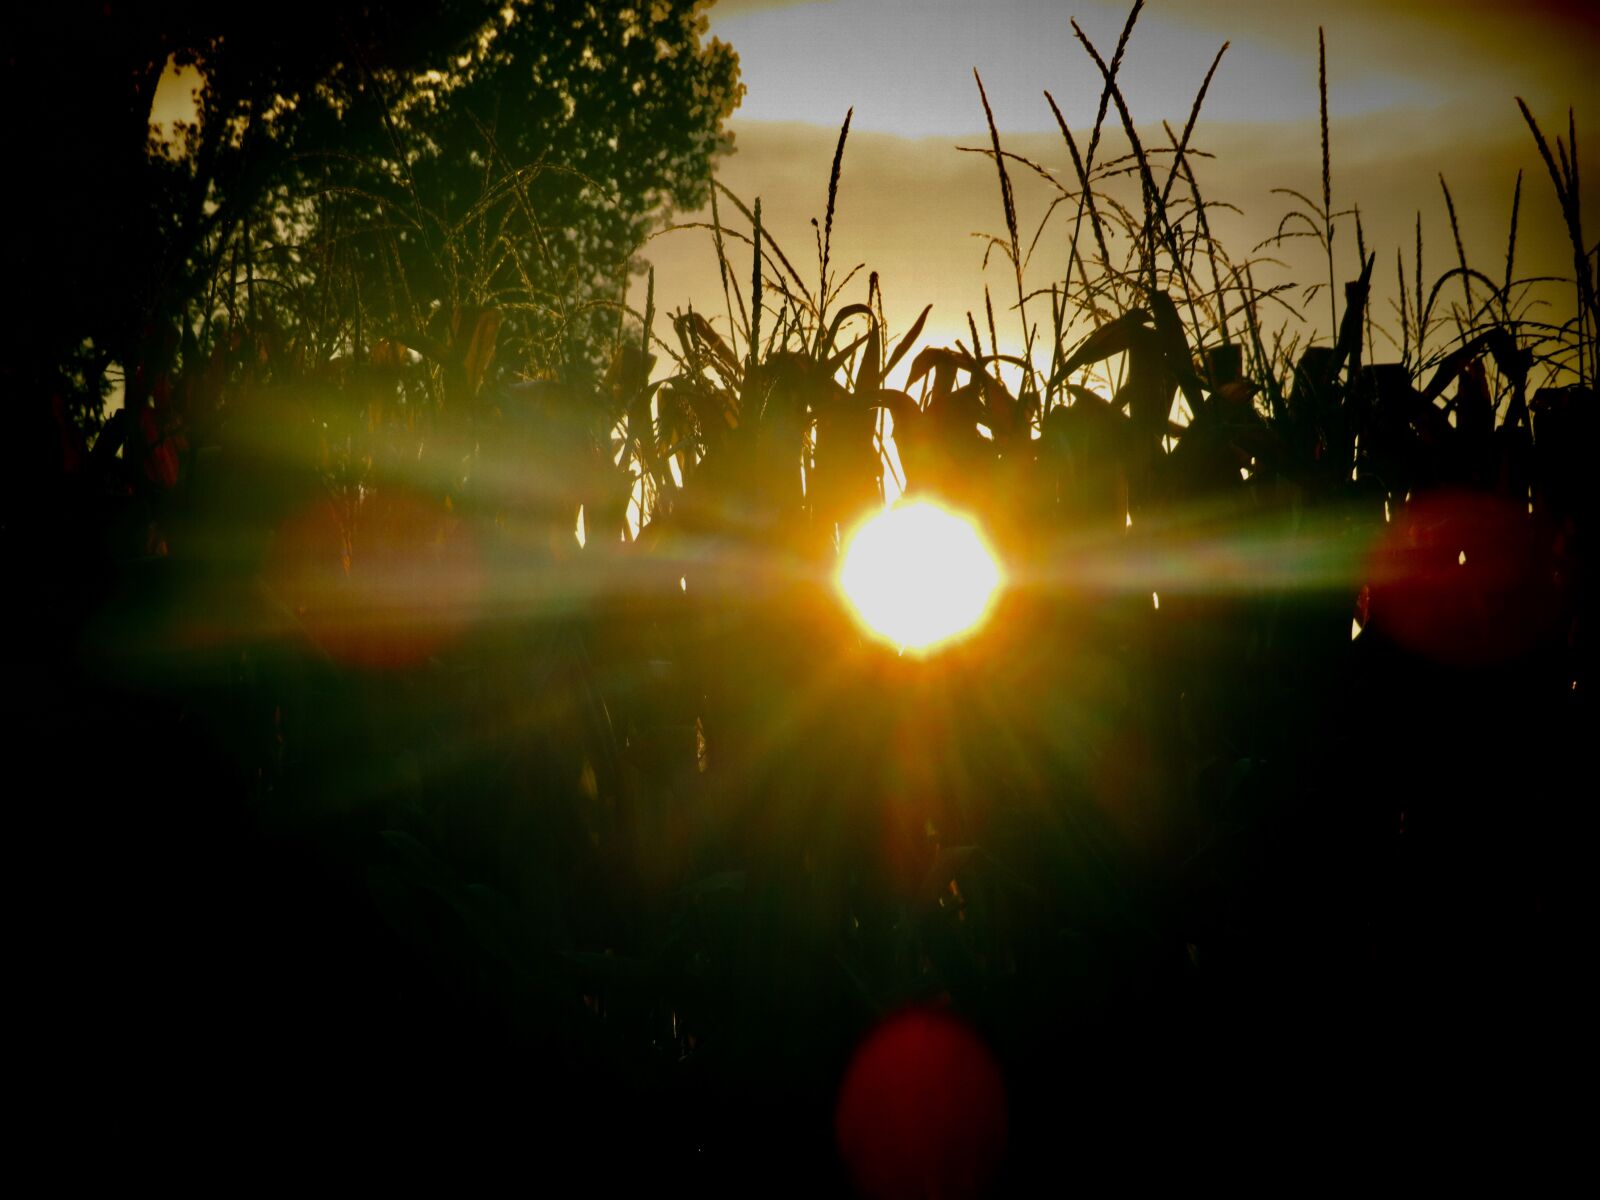 Canon PowerShot SX730 HS sample photo. Sunrise, sun, corn stalk photography